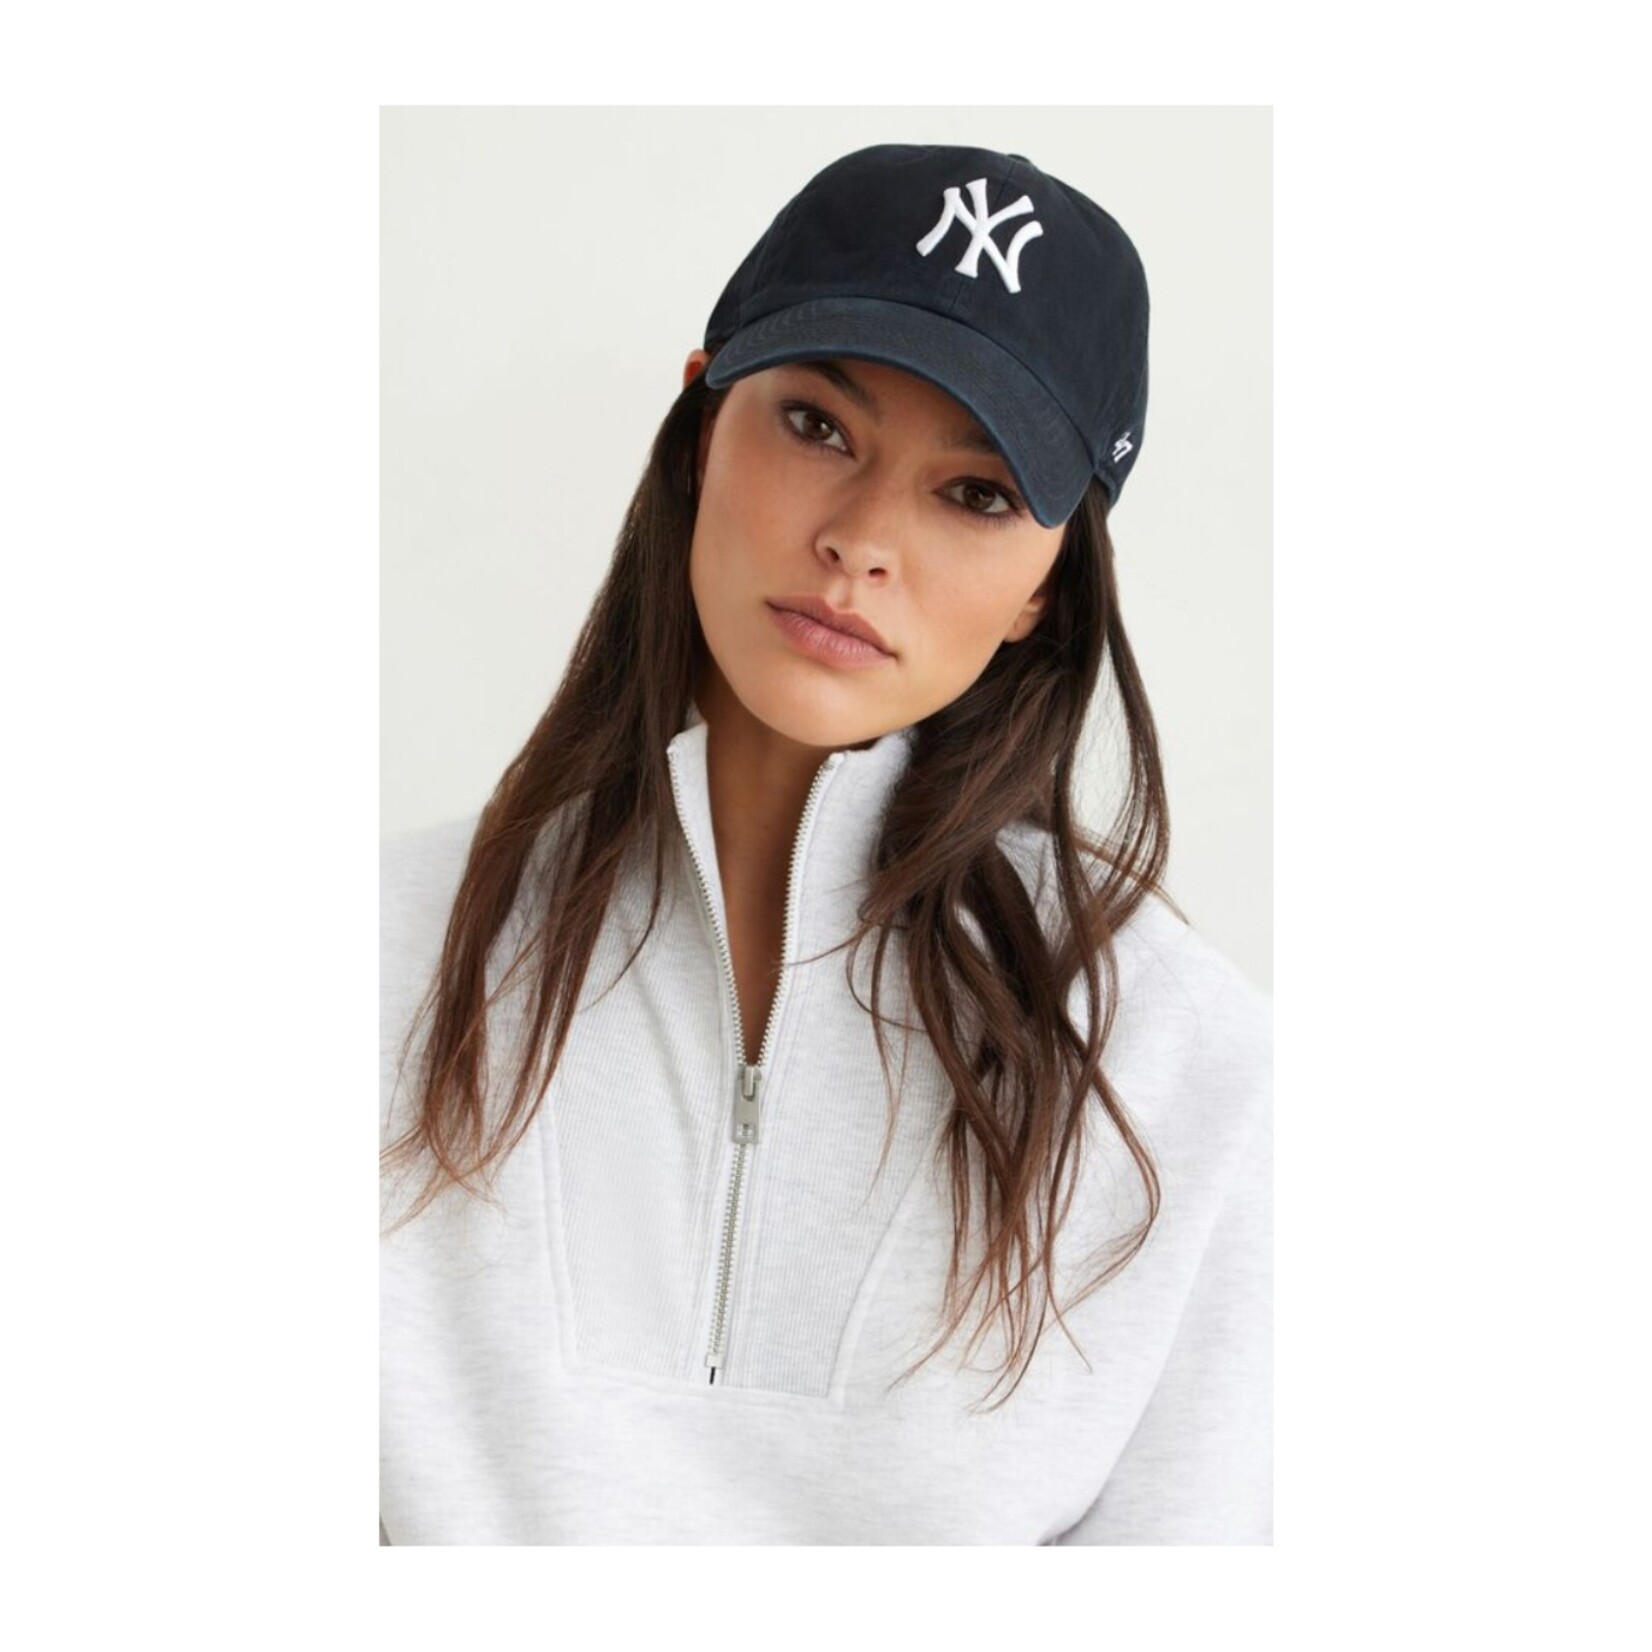 47 Brand NY Hat - Black/white